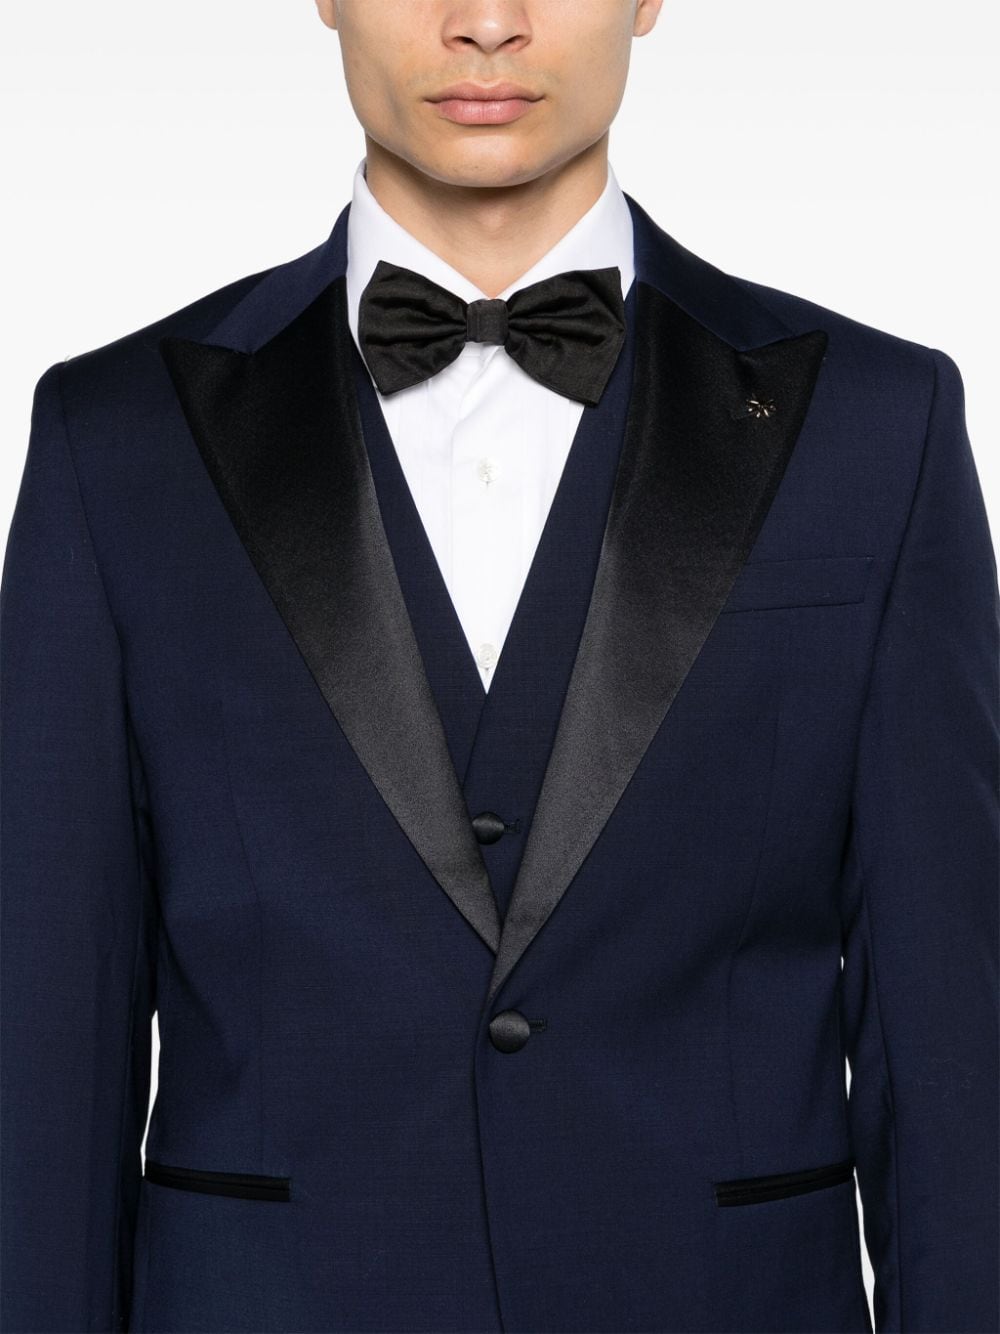 Dark blue single-breasted tuxedo with waistcoat